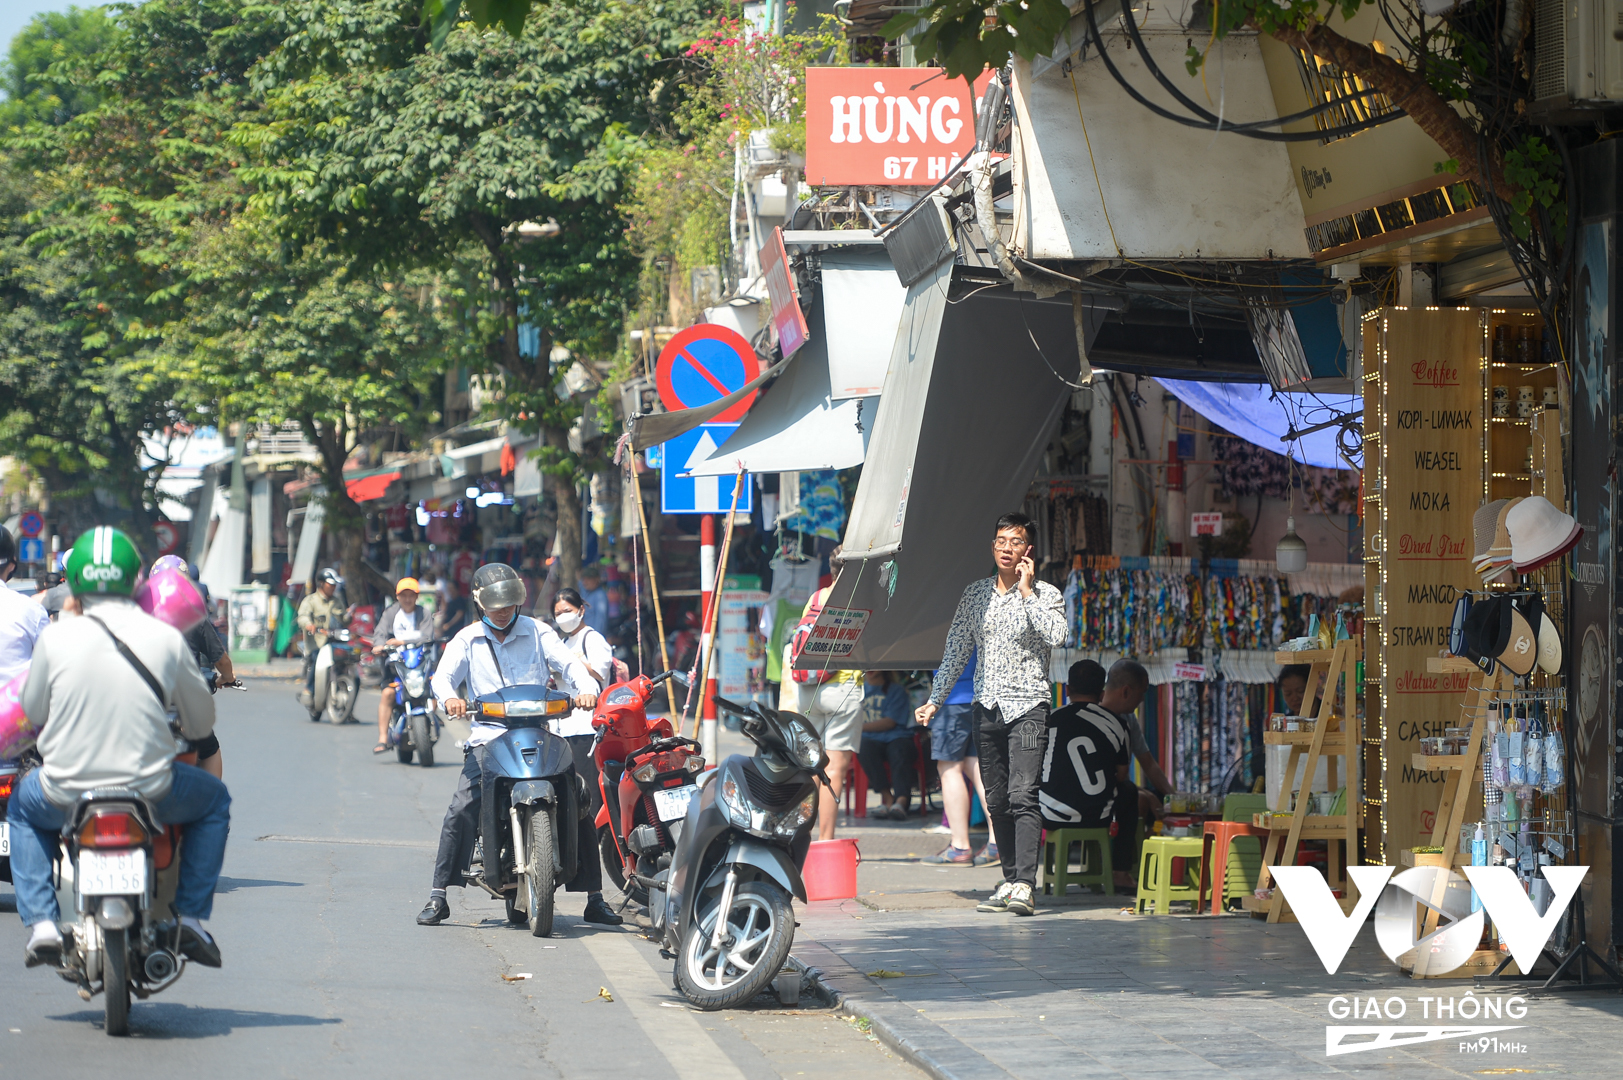 Dọc con phố Hàng Ngang, Hàng Đào thuộc phường Hàng Đào, quận Hoàn Kiếm, Hà Nội cũng không khó bắt gặp việc bày hàng hóa ra vỉa hè, xe máy để dười lòng đường, các hộ kinh doanh căng bạt che nắng lấn vỉa hè.